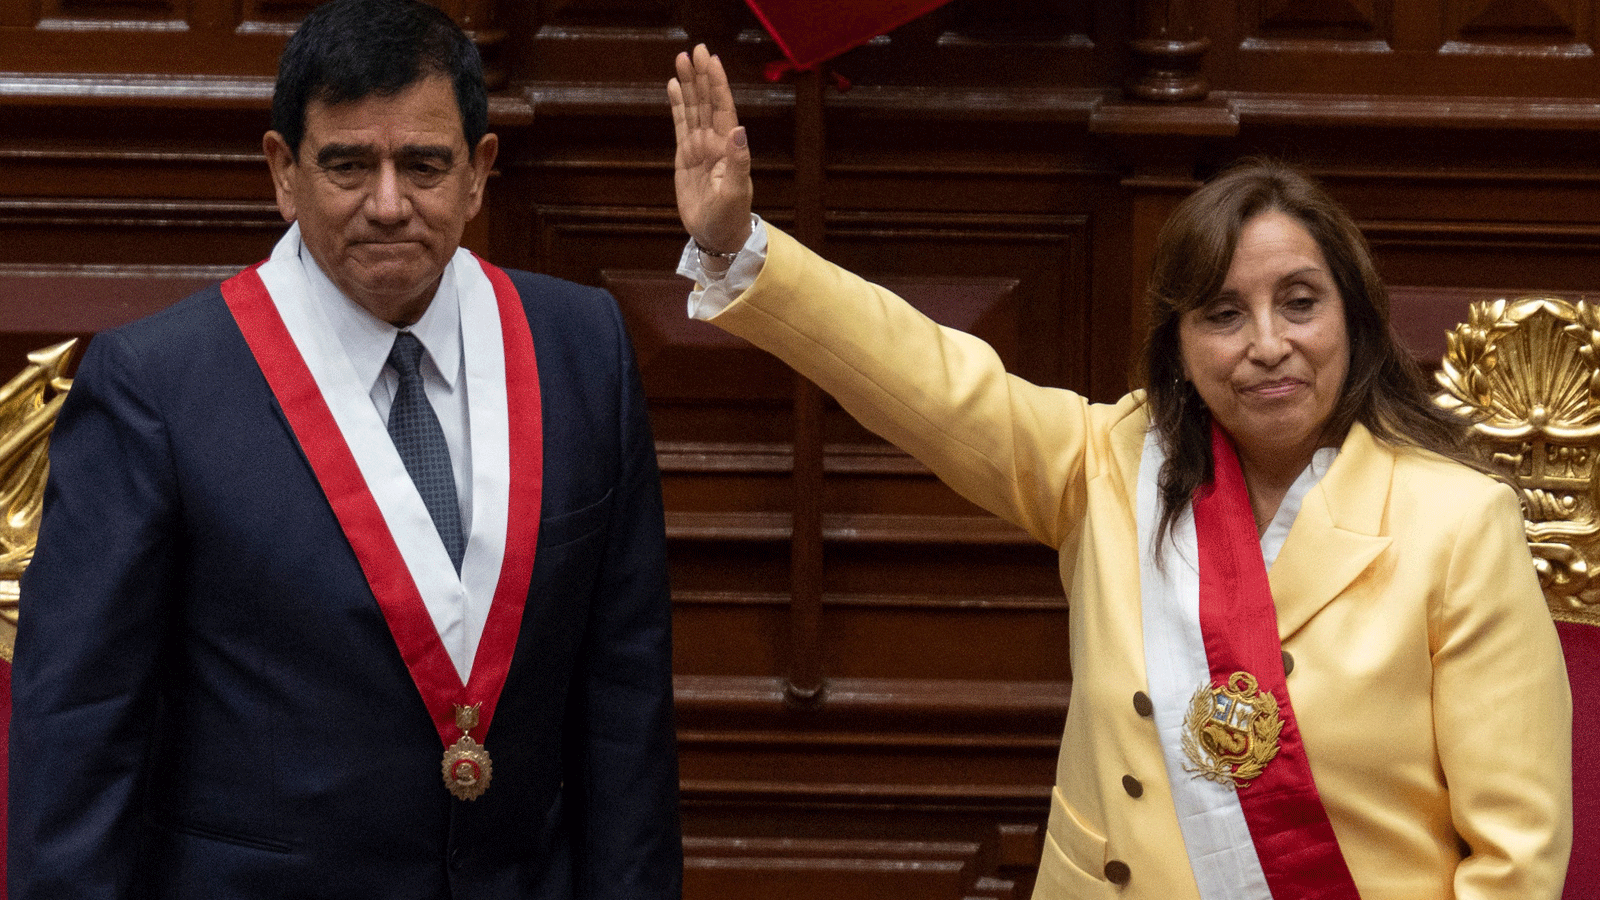 رئيس الكونغرس البيروفي خوسيه ويليامز زاباتا (يسار) يقف بجوار دينا بولوارت (يمين) بعد أن أدىت اليمين الدستورية كرئيسة جديدة بعد ساعات من عزل الرئيس السابق بيدرو كاستيلو في ليما. 7 كانون الأول\ديسمبر 2022